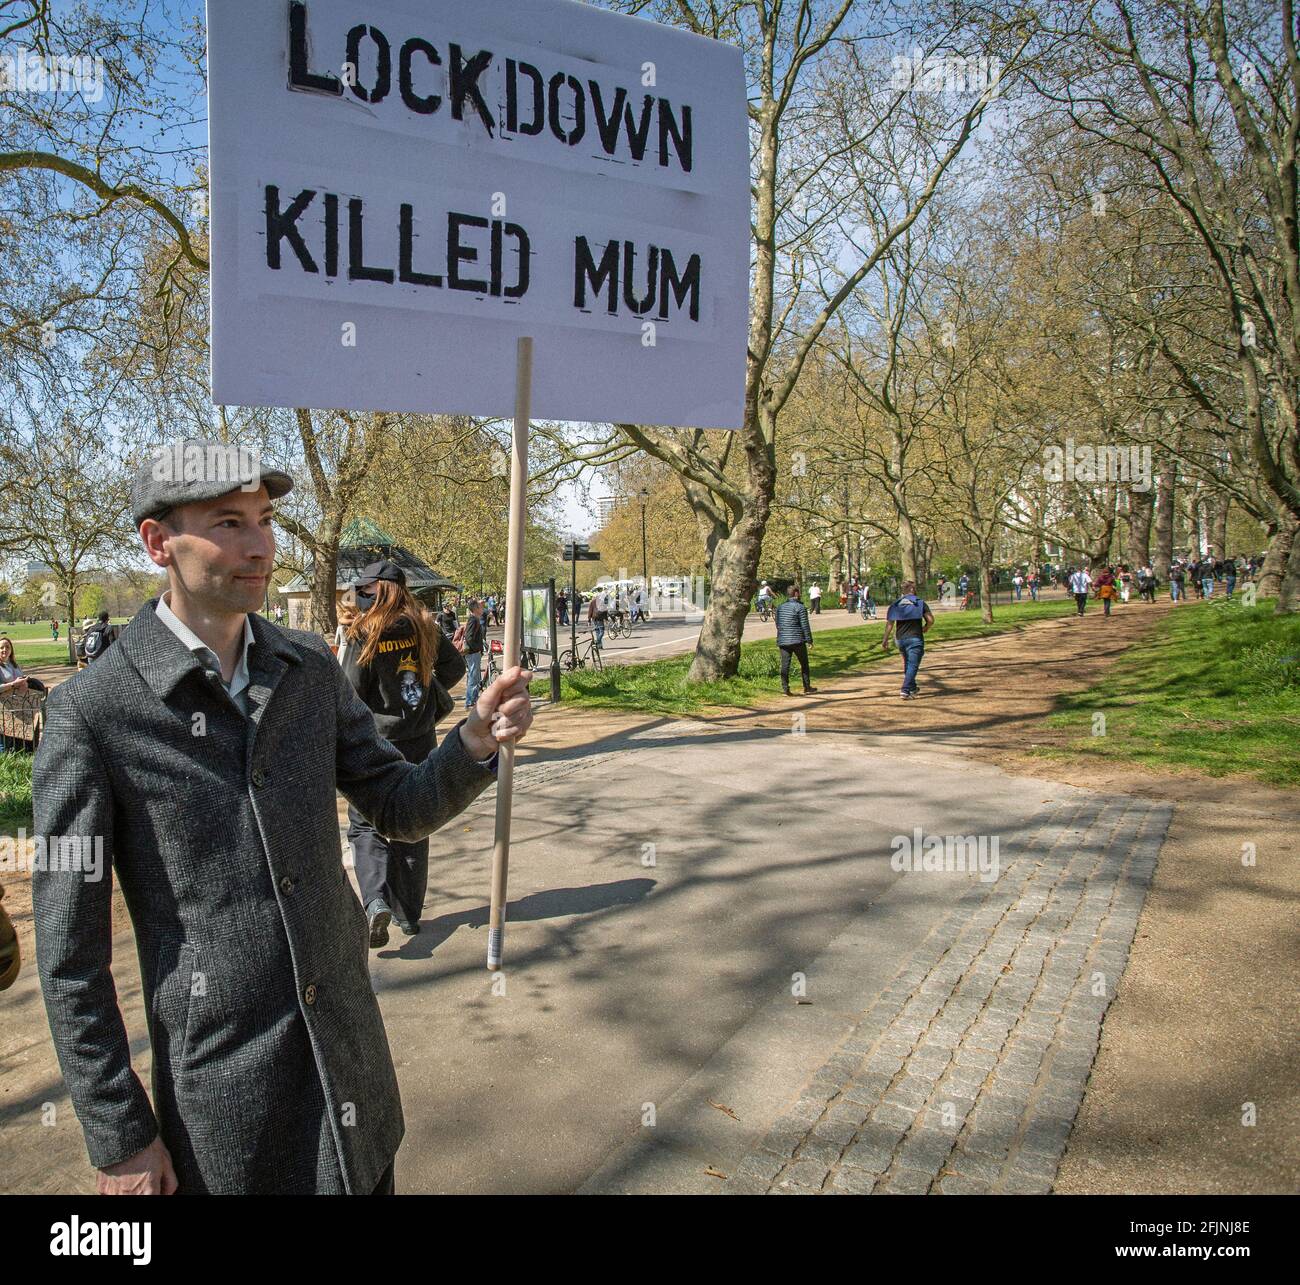 24 avril 2021,Londres, Angleterre, Royaume-Uni: Man tient un panneau "Lockdown tué maman" lors d'une manifestation anti-verrouillage "Unite for Freedom" à Londres Banque D'Images